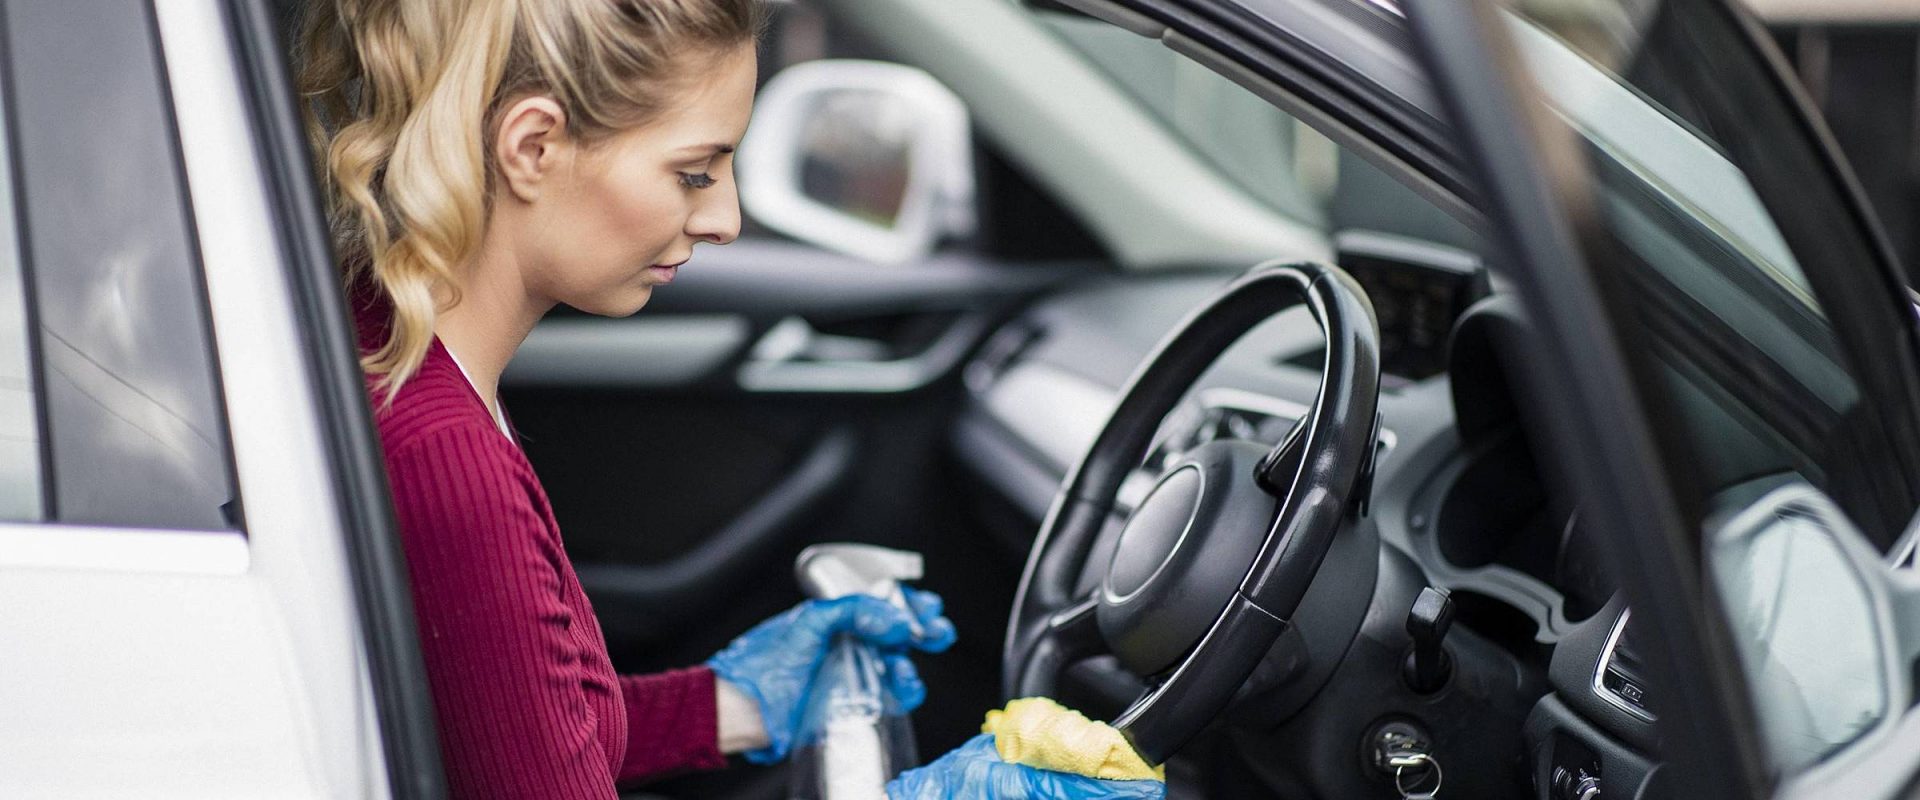 Higienização do carro: dicas para prevenir o Coronavírus